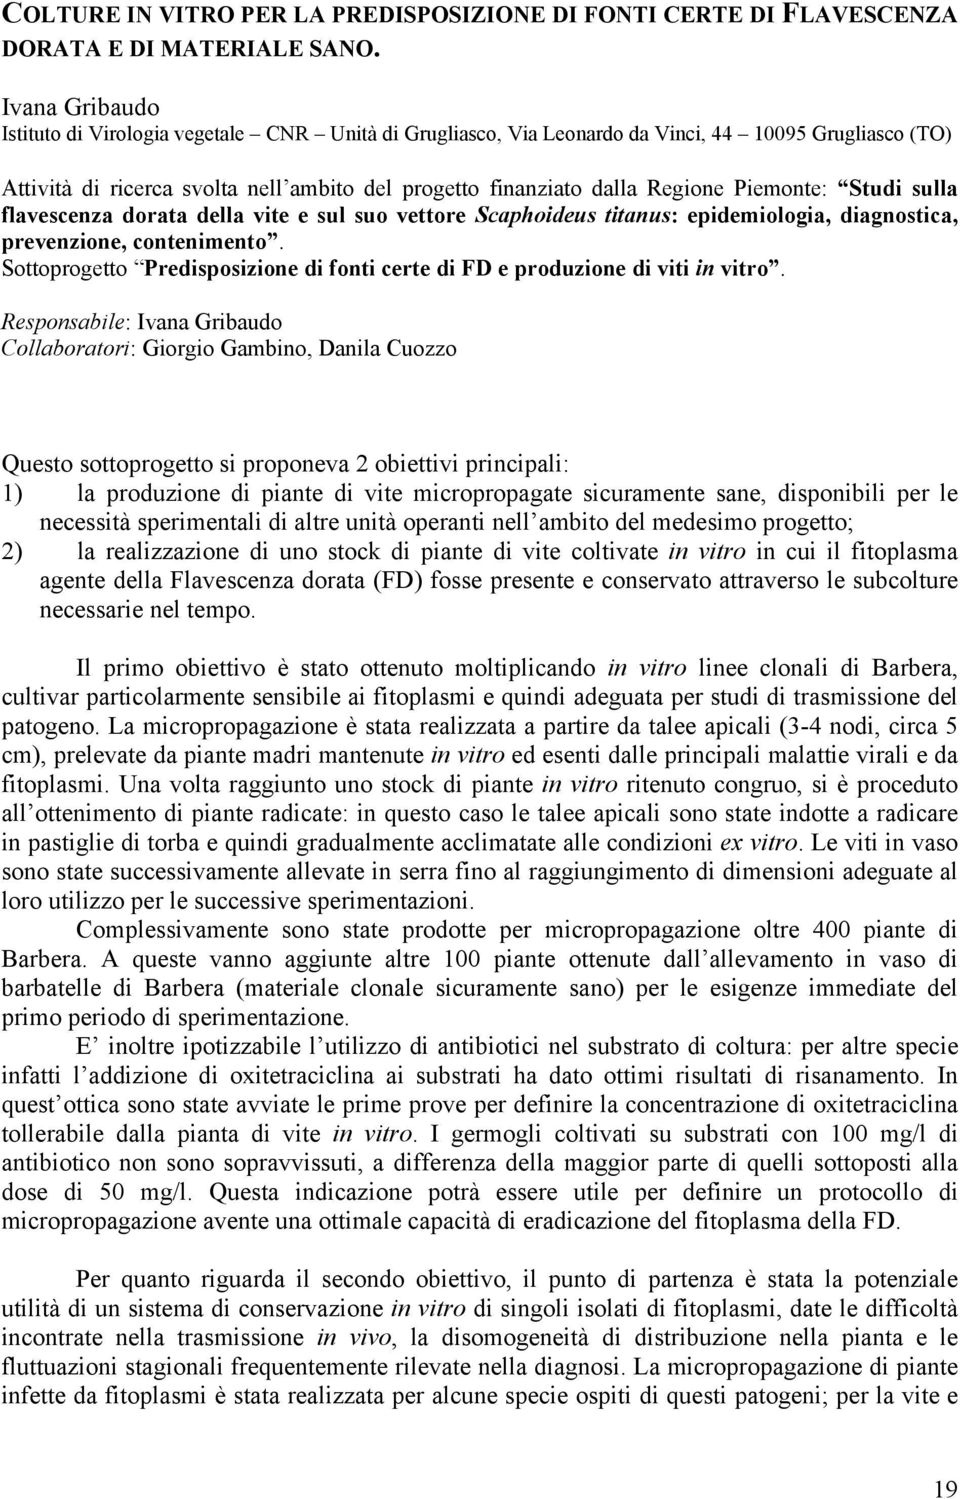 Piemonte: Studi sulla flavescenza dorata della vite e sul suo vettore Scaphoideus titanus: epidemiologia, diagnostica, prevenzione, contenimento.